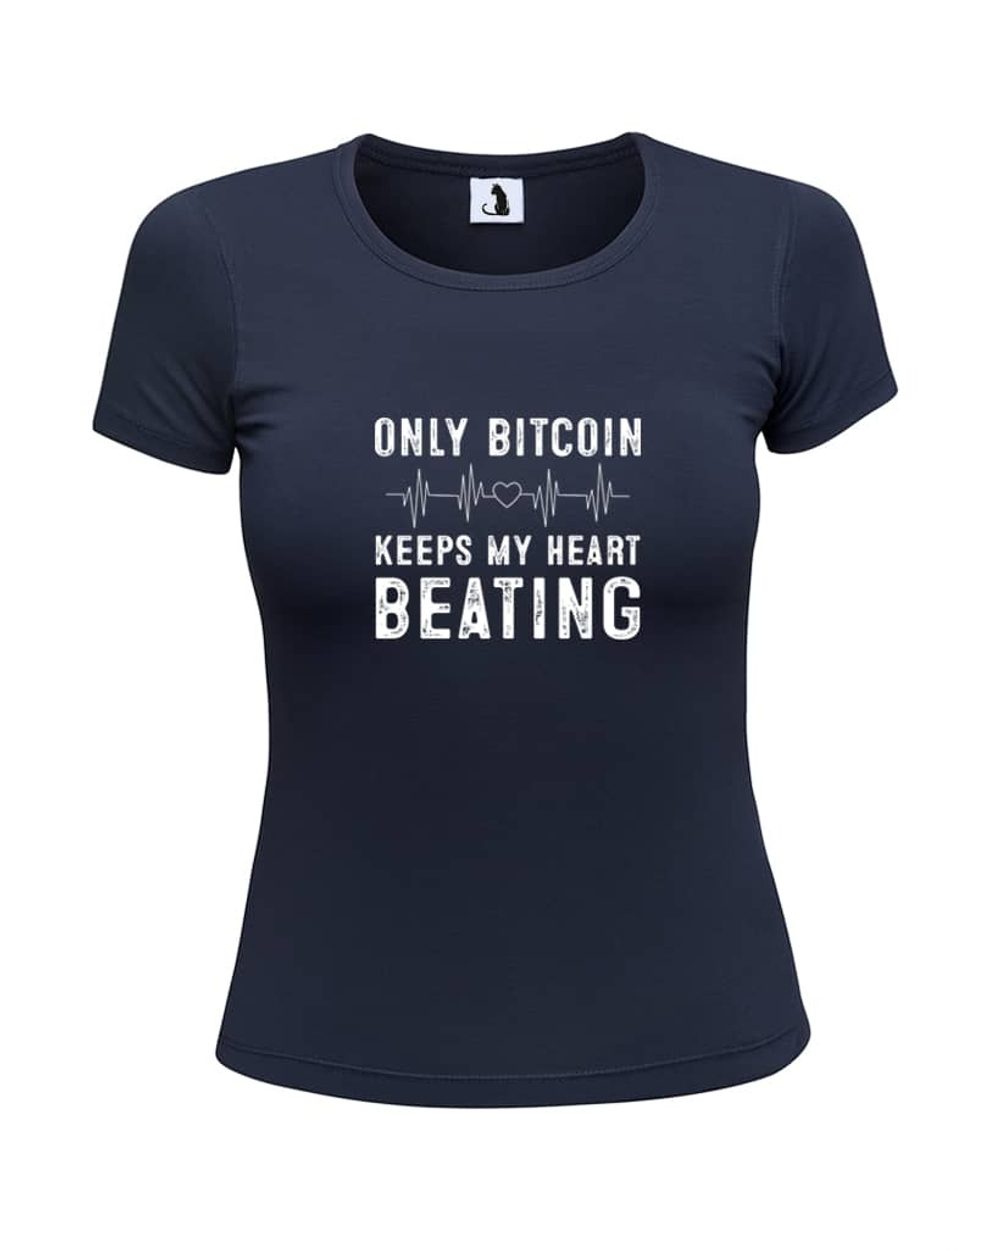 Футболка Only Bitcoin женская приталенная темно-синяя